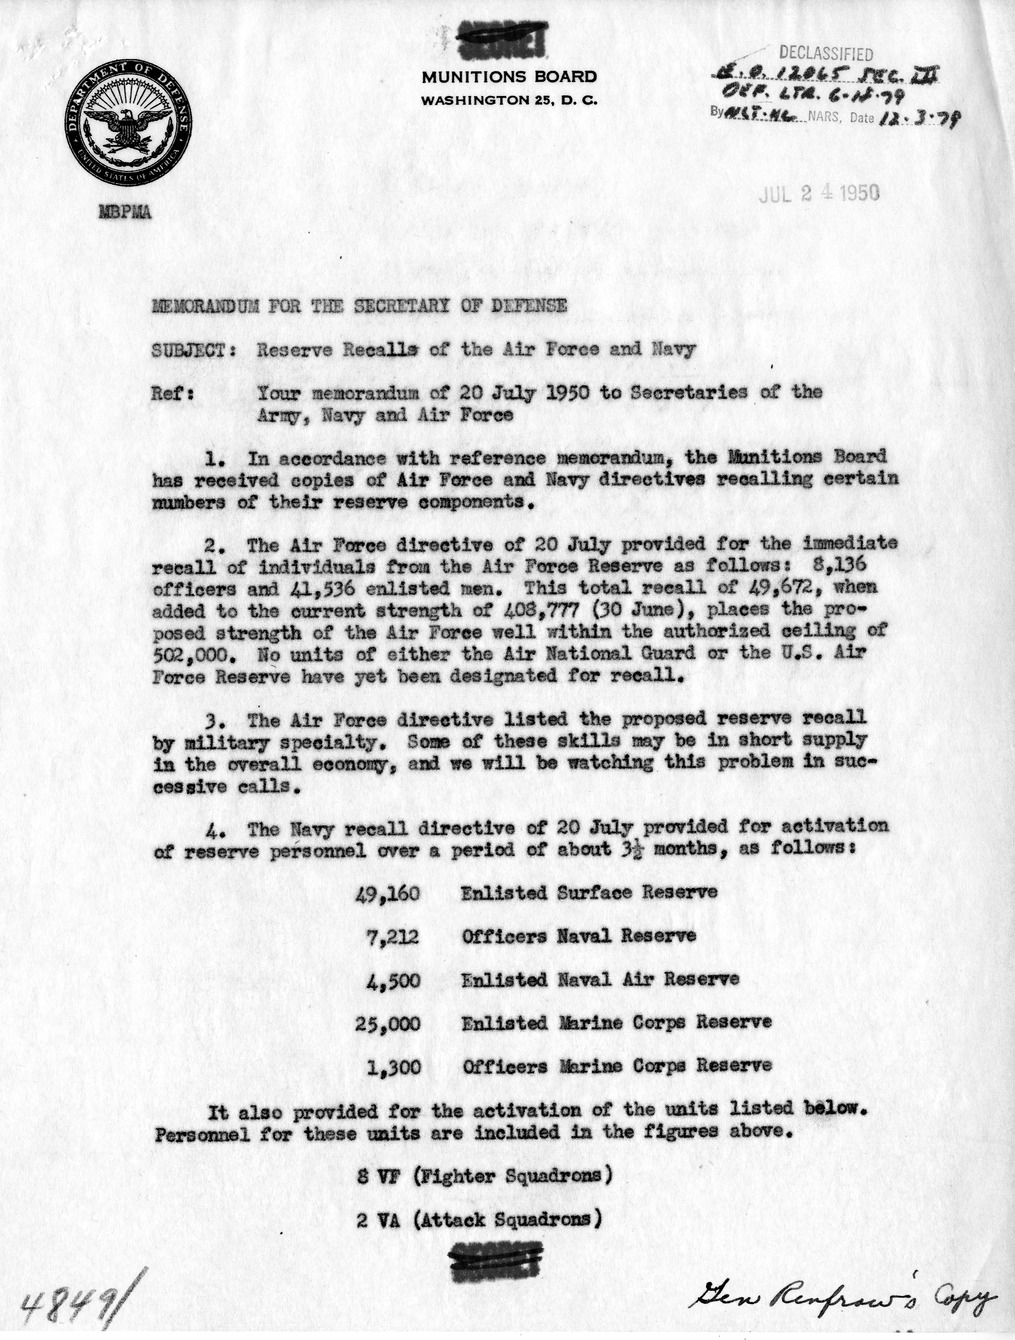 Memorandum from Major General Patrick Timberlake to Secretary of Defense Louis Johnson